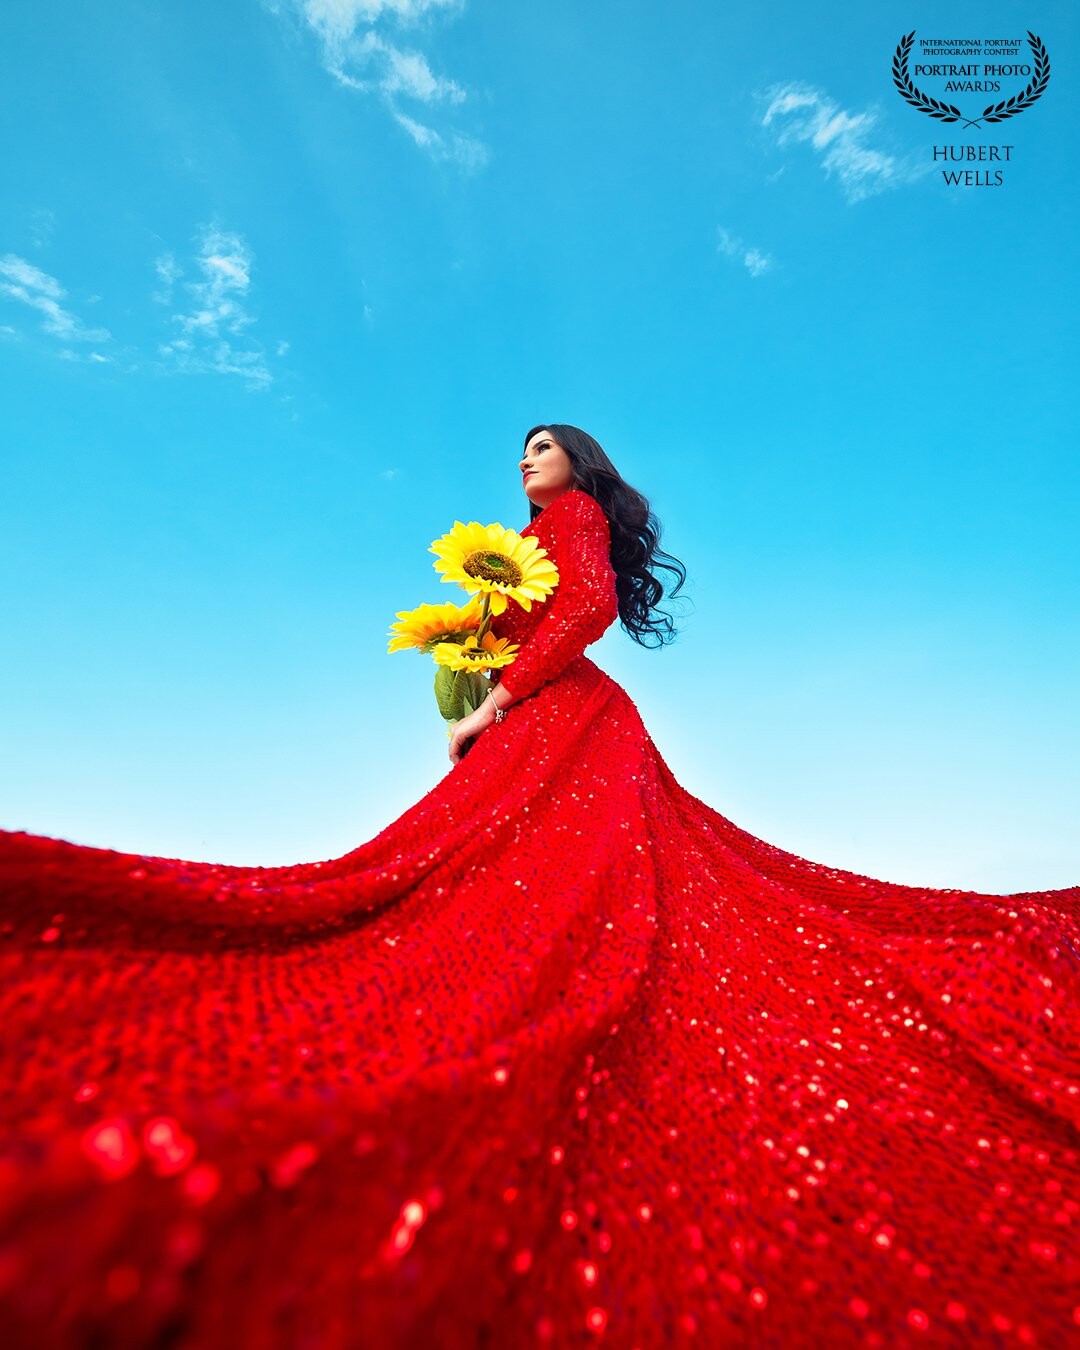 RED DRESS QUEEN<br />
⁣<br />
¡Nos encantó lo colorido que se ven estas fotos! ⁣<br />
Ese hermoso vestido rojo resaltando la belleza natural de nuestra modelo en contraste con el azul del cielo y el mar. ⁣